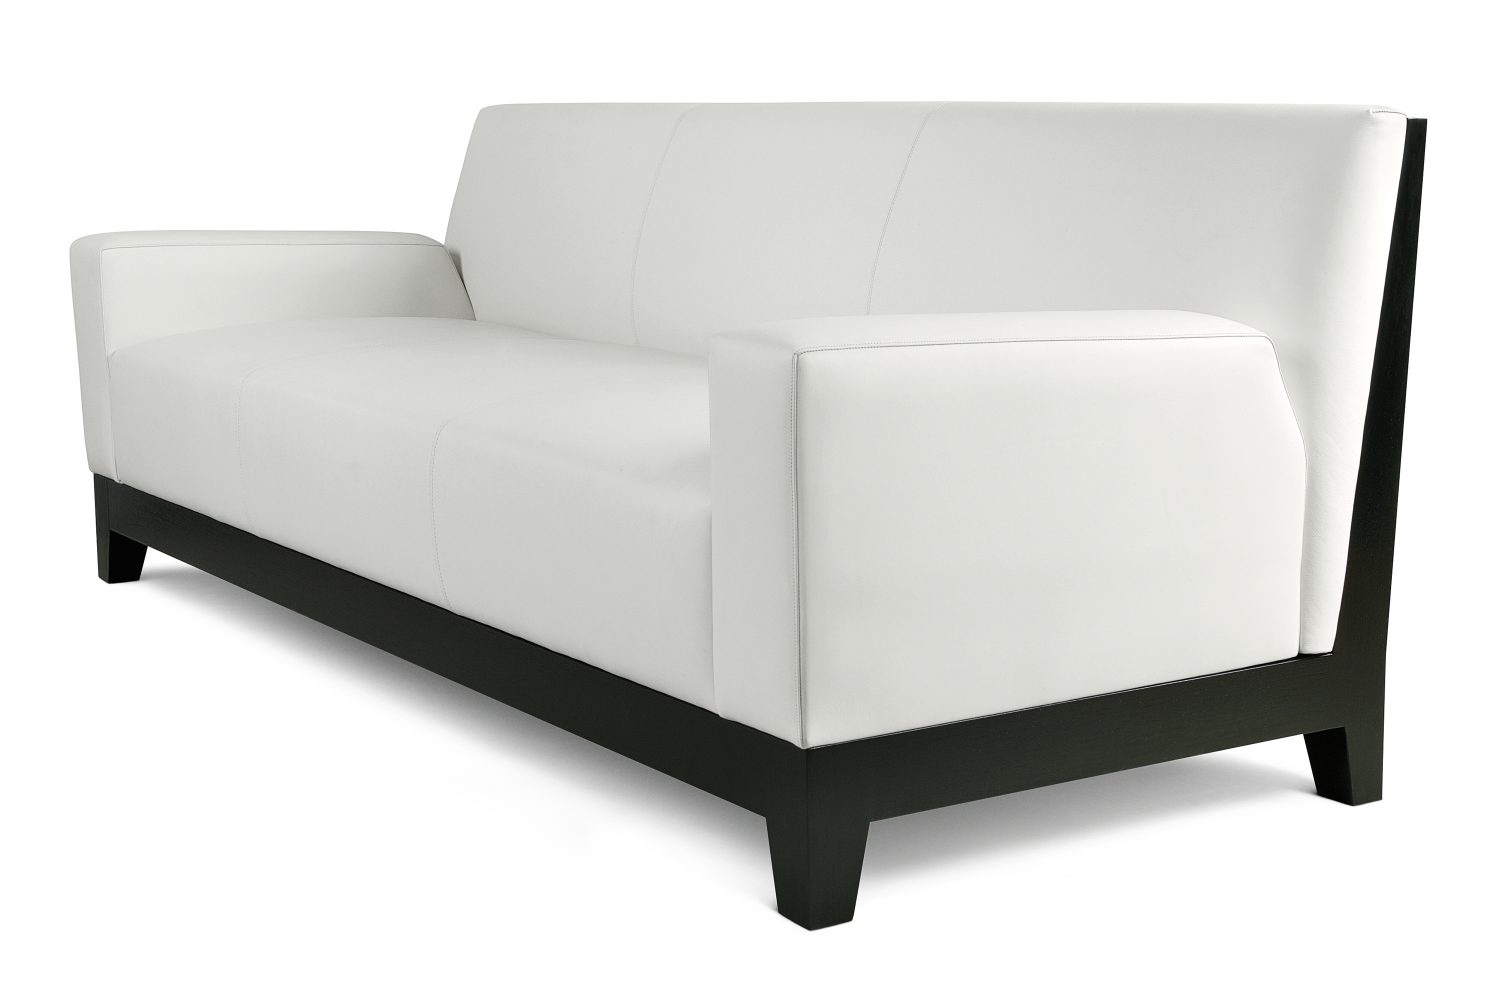 designer sofas australia